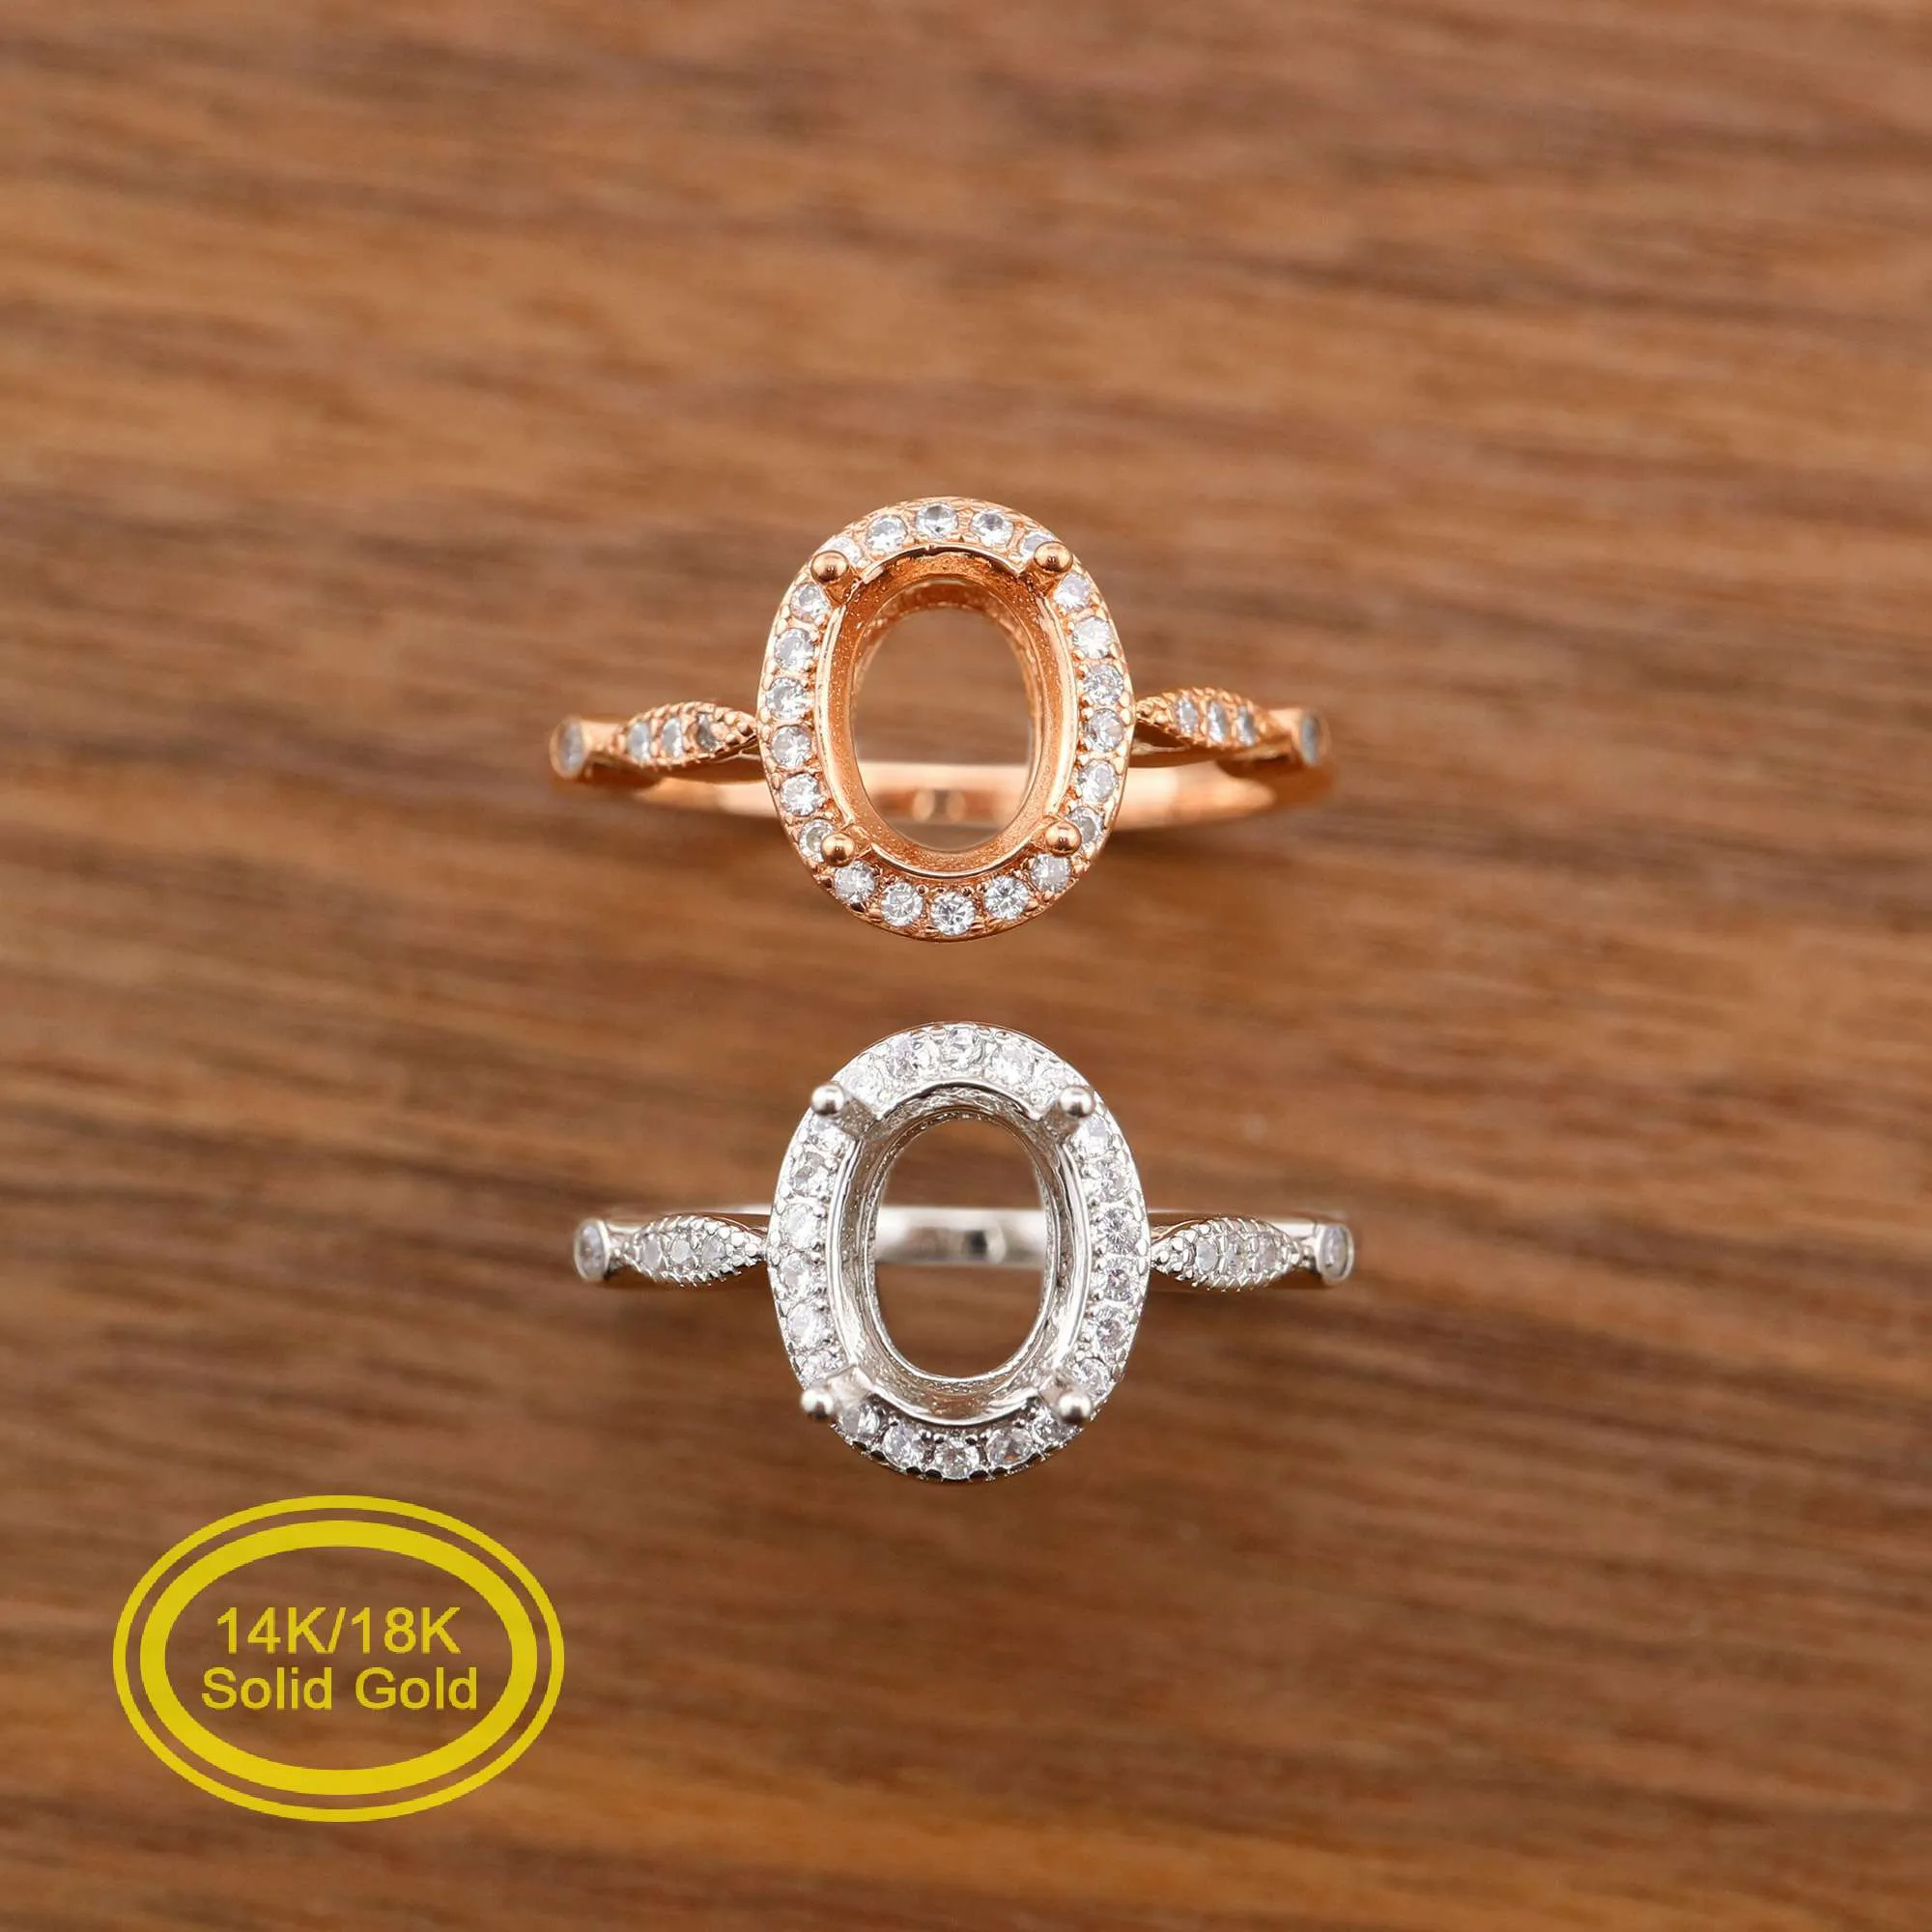 Oval Prong Ring Inställningar Solid 14K / 18K Rose Vit Guld med Moissanit Accents DIY Vintage Style Bezel Tray Gemstone 1224057